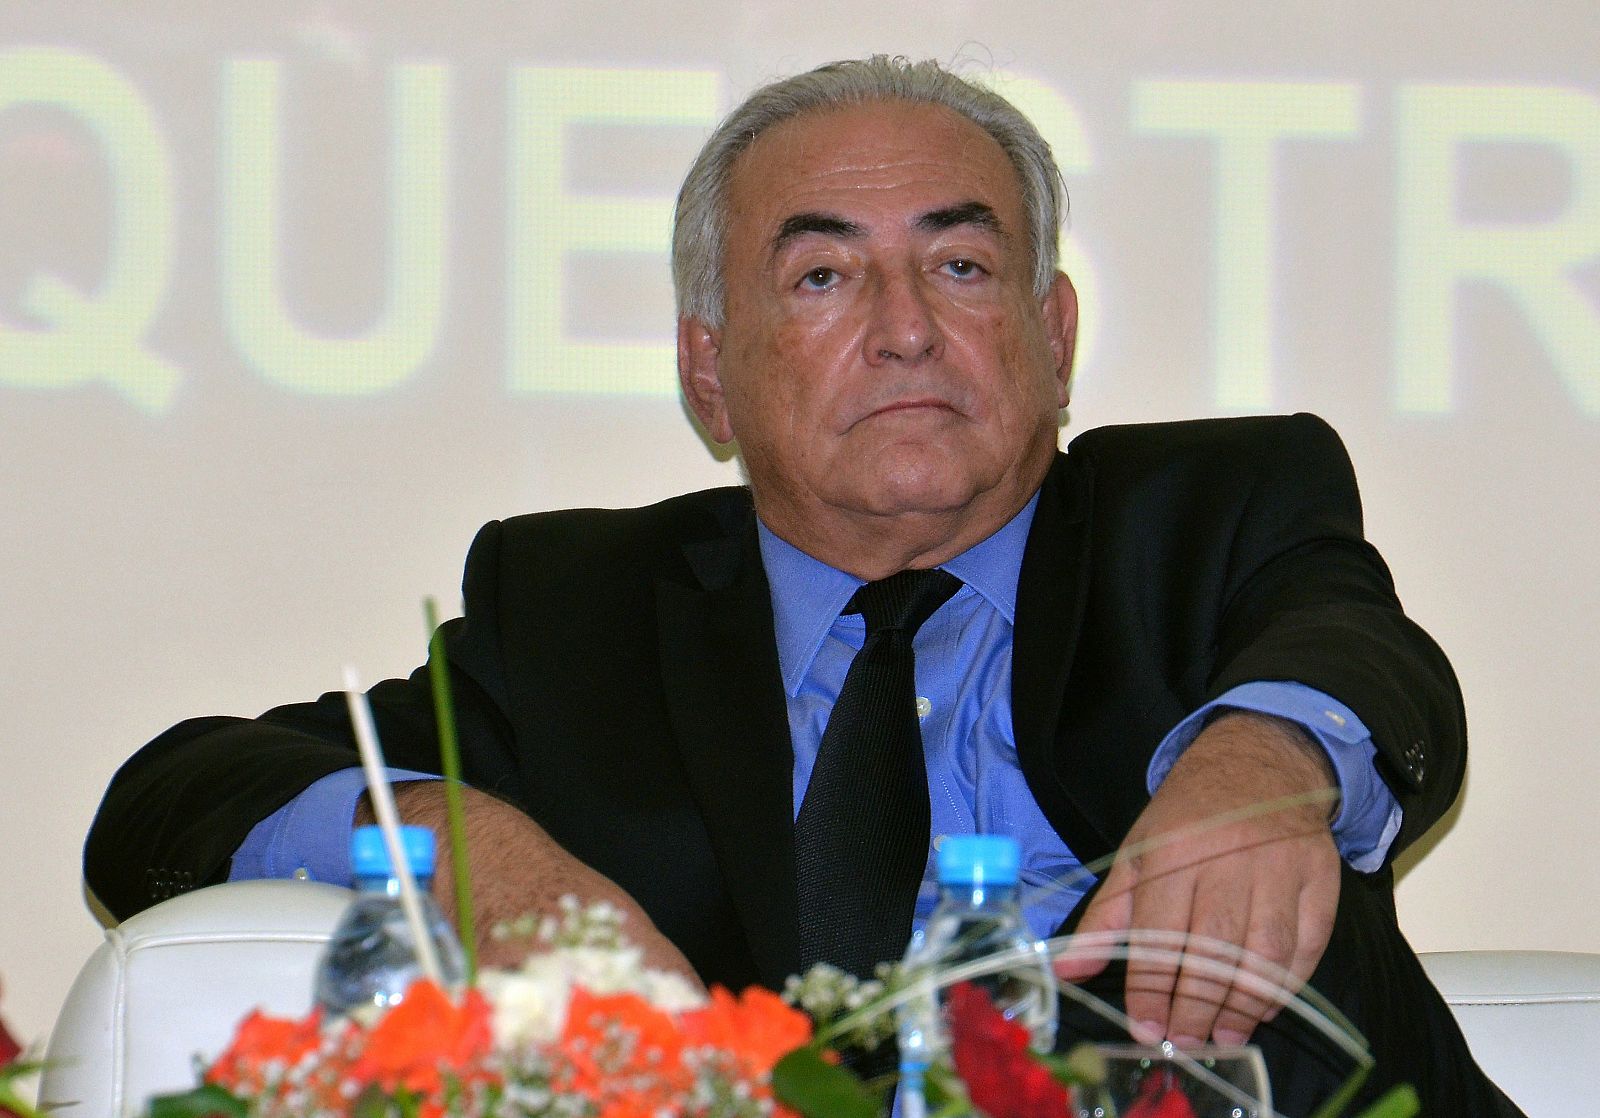 Imagen de archivo del exdirector del FMI, Dominique Strauss-Kahn, tomada durante una conferencia el 21 de septiembre del pasado año.